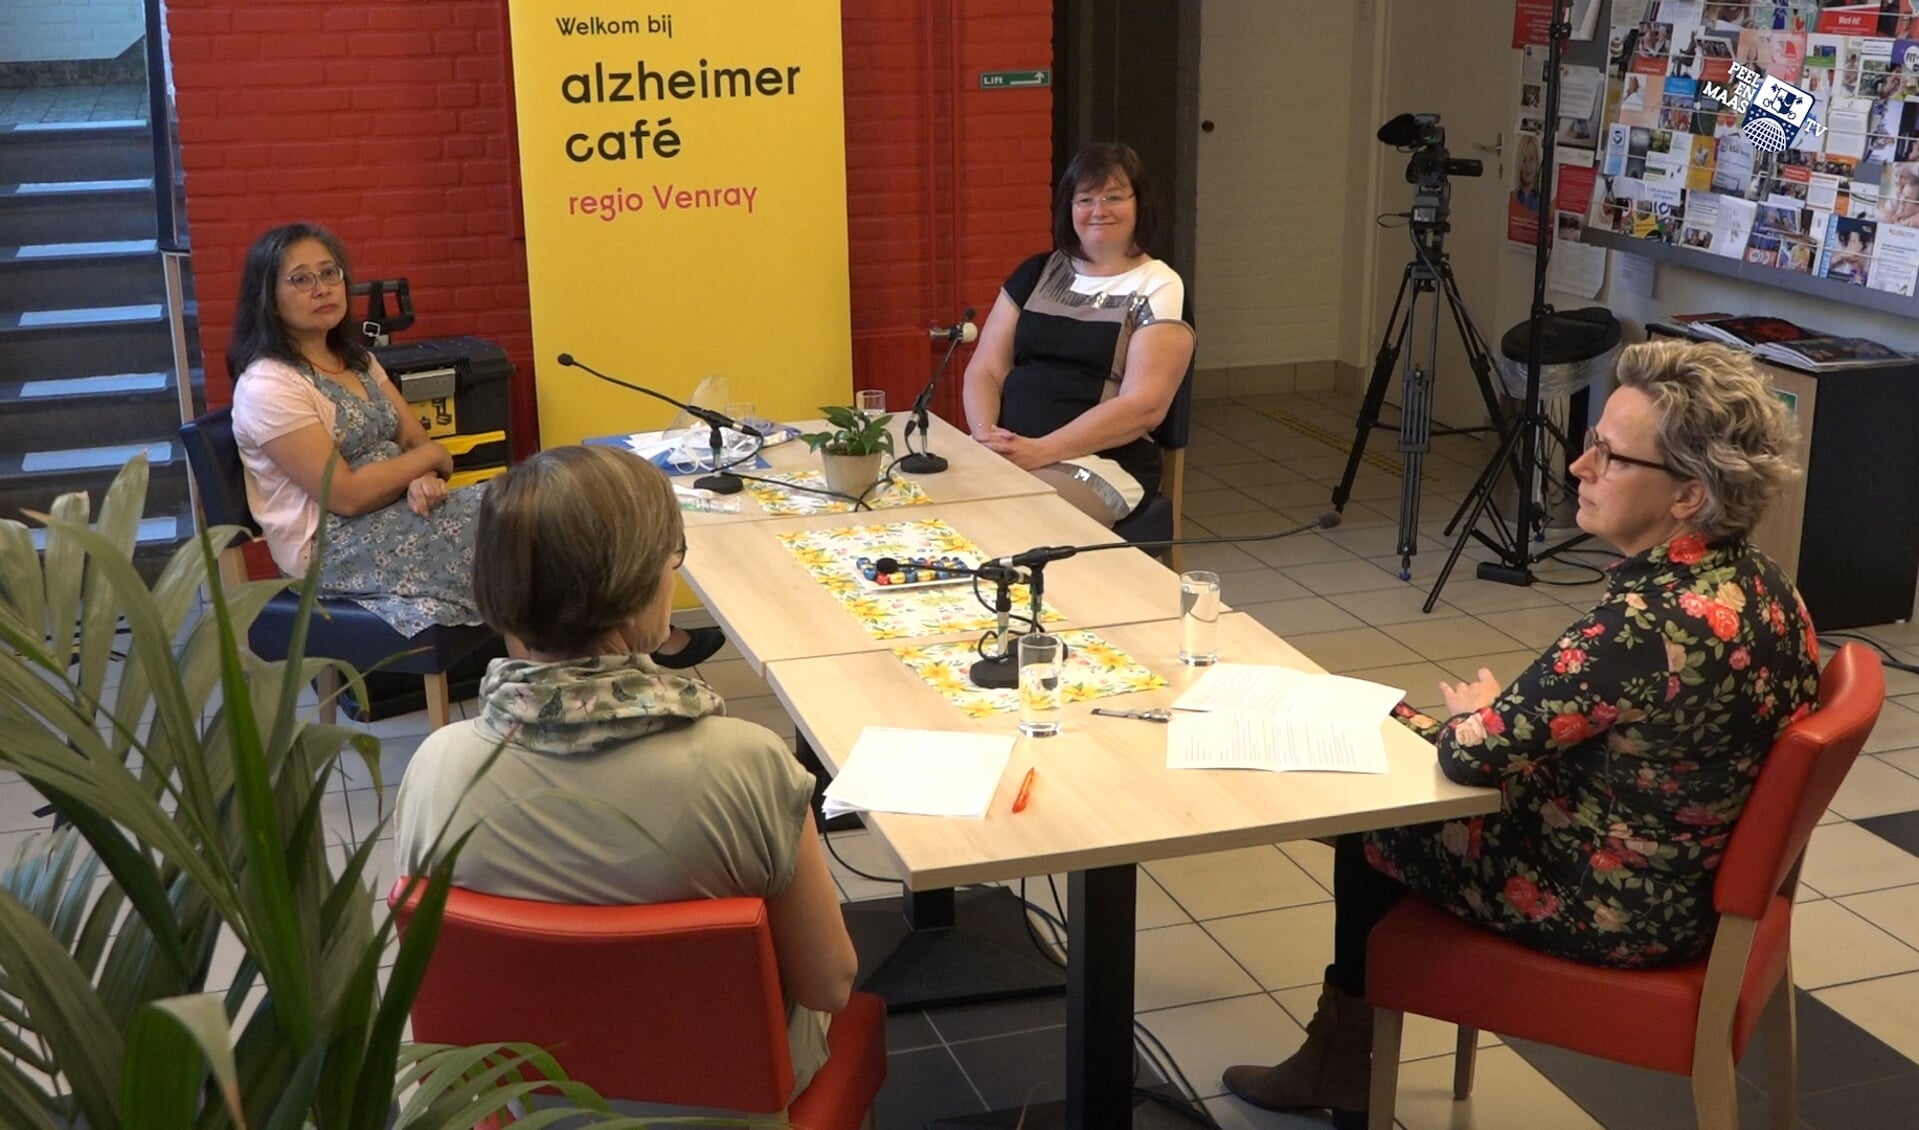 In gesprek tijdens het nieuwe Alzheimer TV Café.